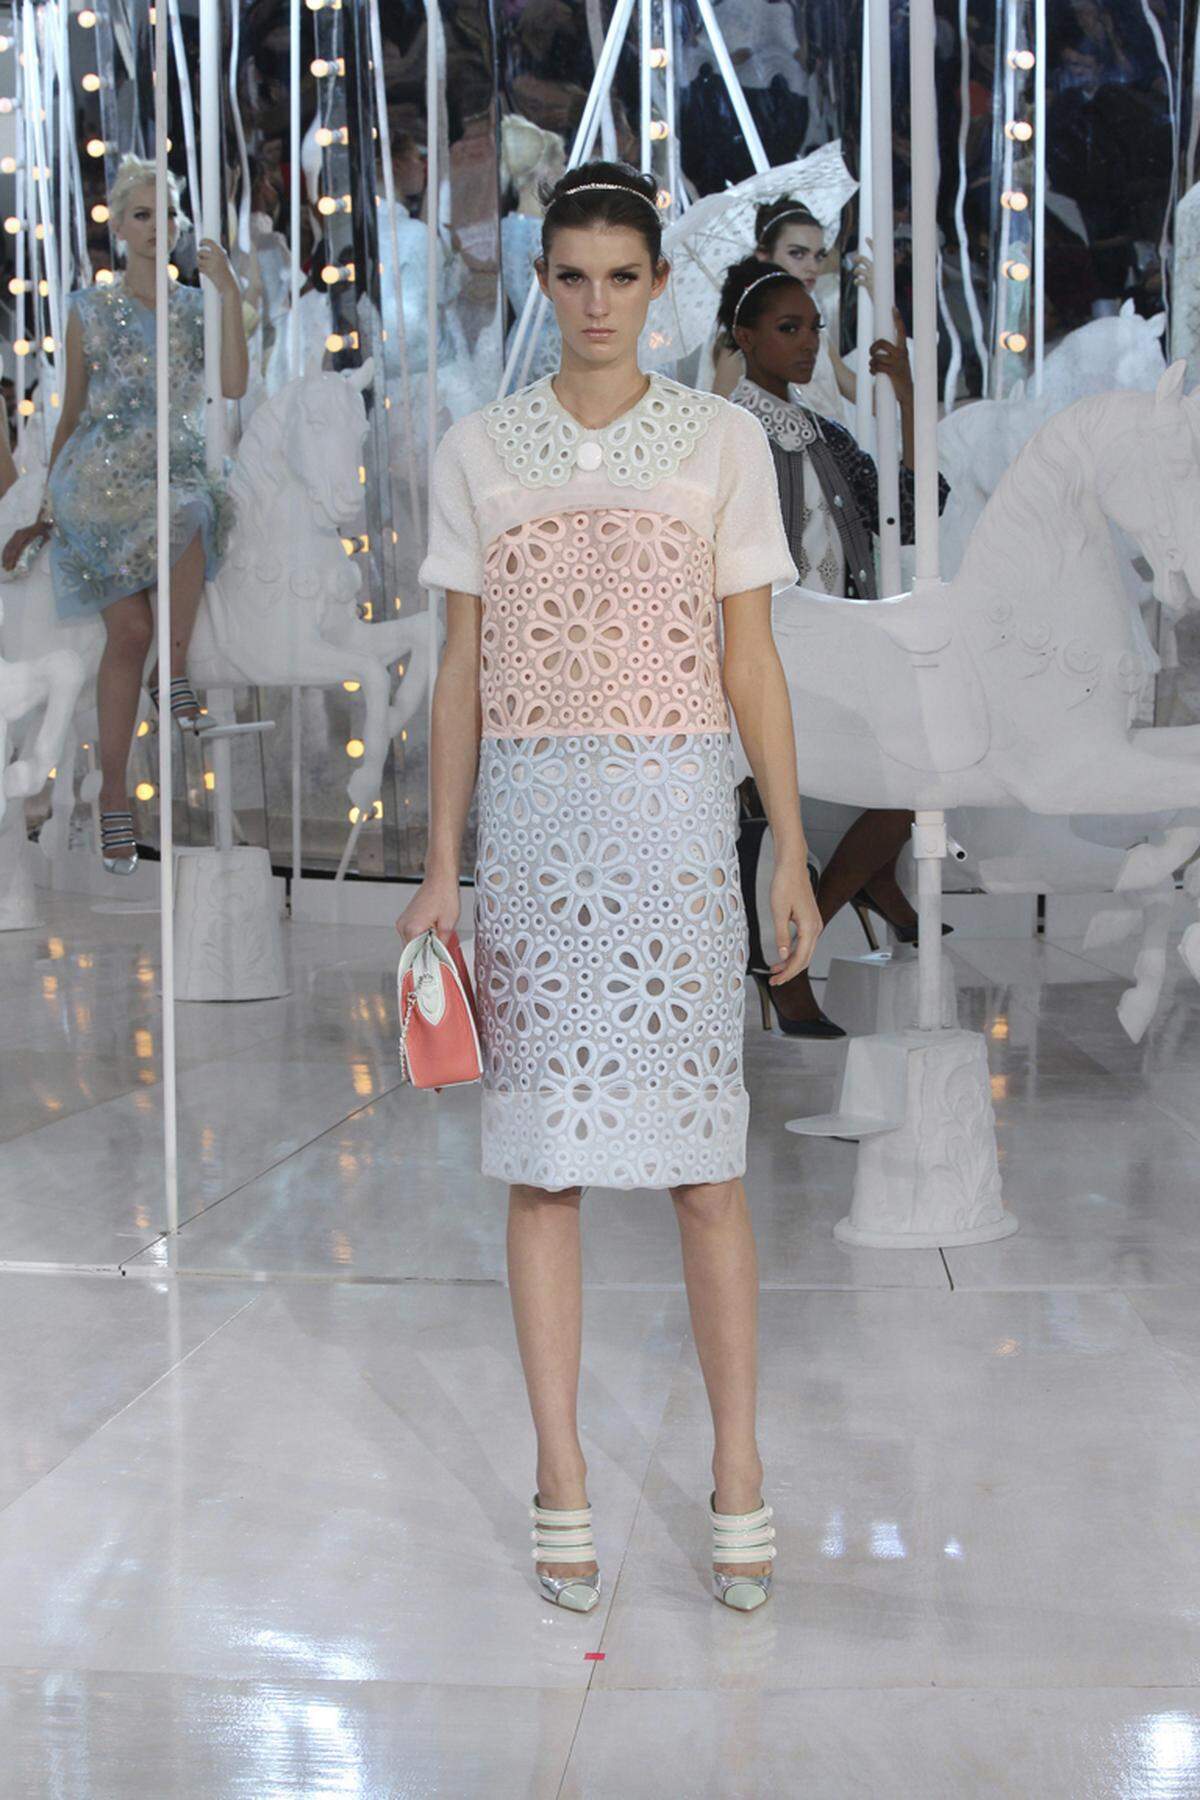 Pfirsich, Pistazie und Vanille: Pastellfarben sind zum Anbeißen, wie das Model bei Louis Vuitton zeigt.